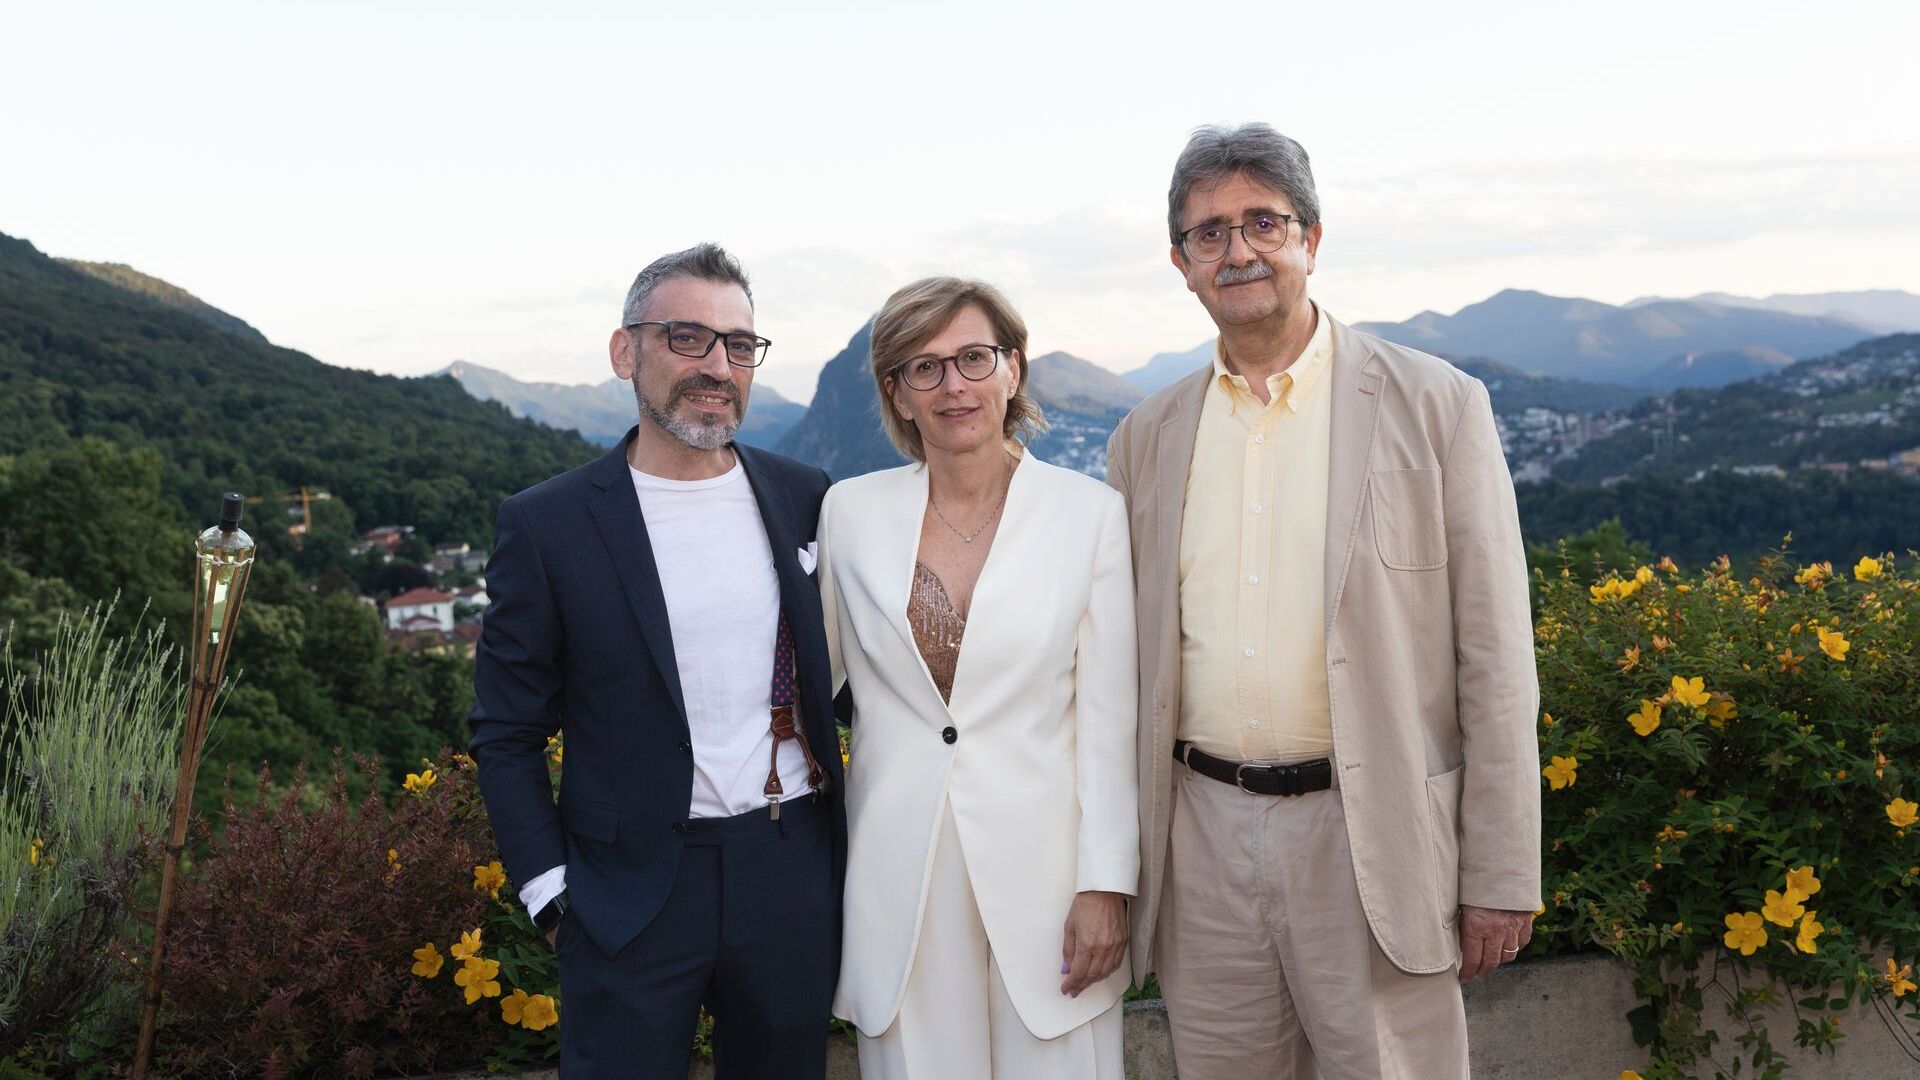 Luca Mauriello e Cristina Giotto, rispettivamente Vice Presidente e Presidente di ated-ICT Ticino, con il socio Silvano Marioni